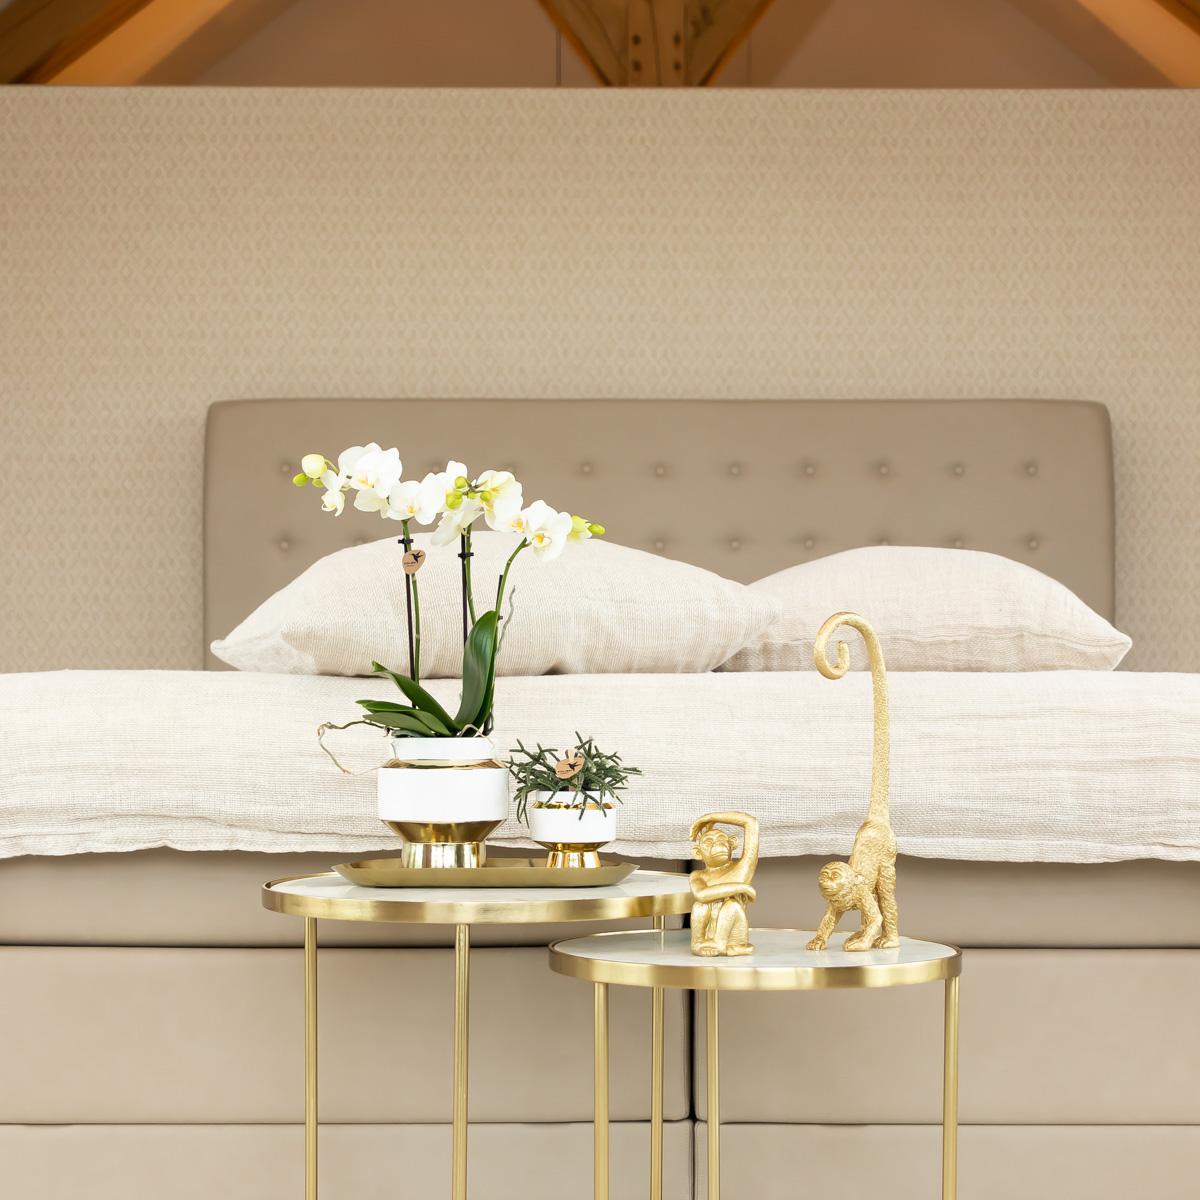 Kolibri Home | Le Chic bloempot - Witte keramieken sierpot met gouden details - potmaat Ø9cm